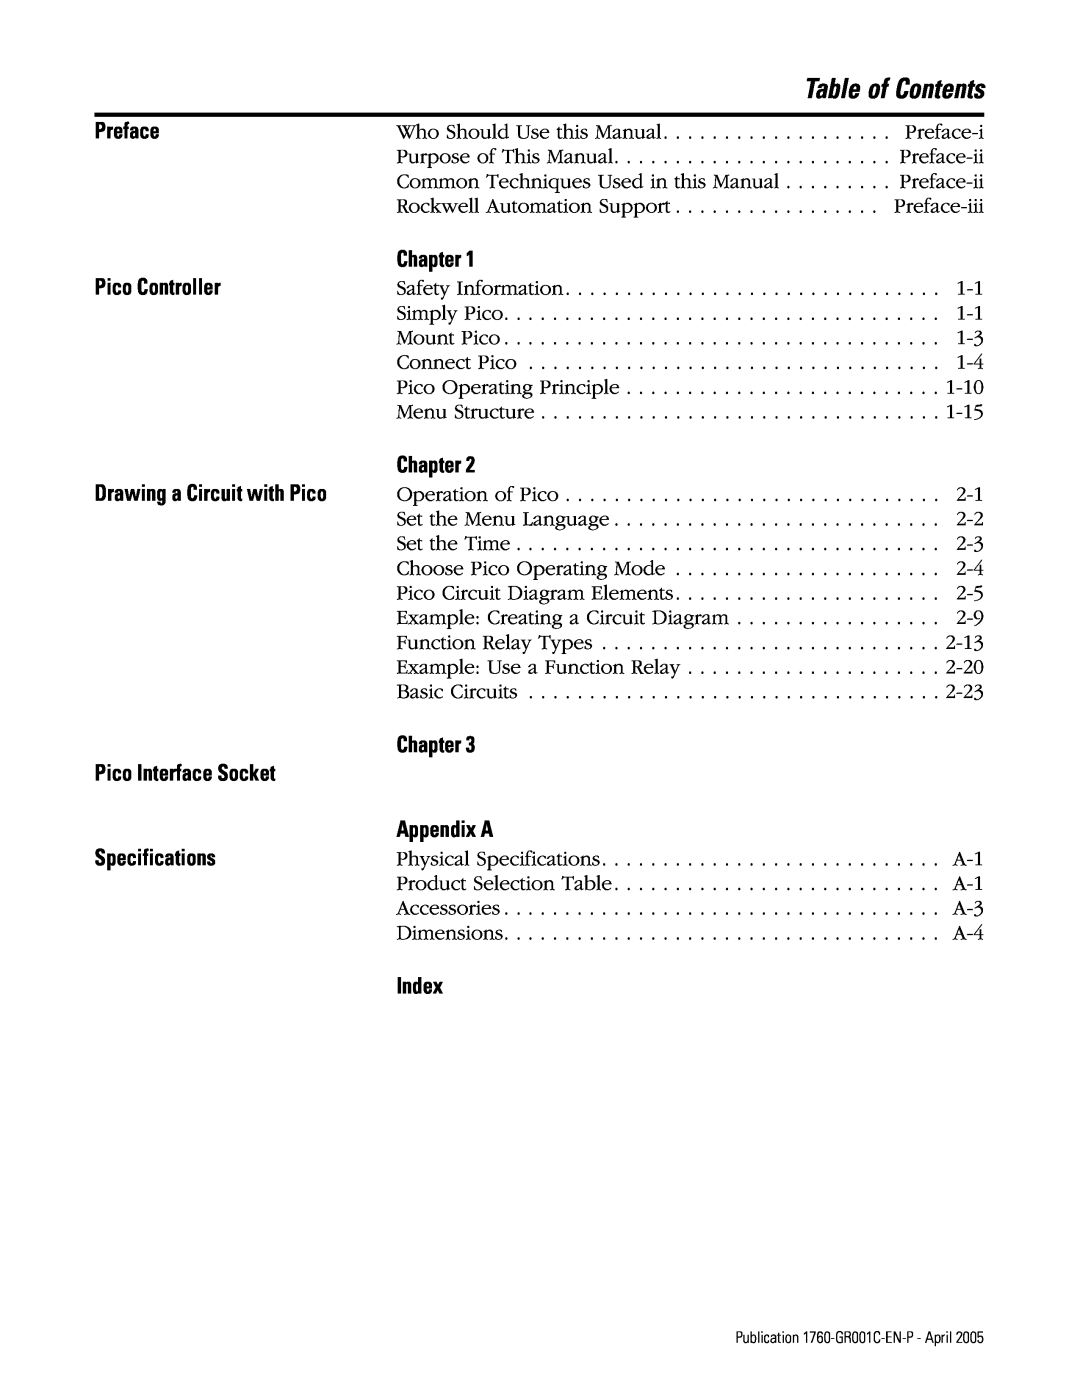 AB Soft manual Table of Contents, Publication 1760-GR001C-EN-P - April 